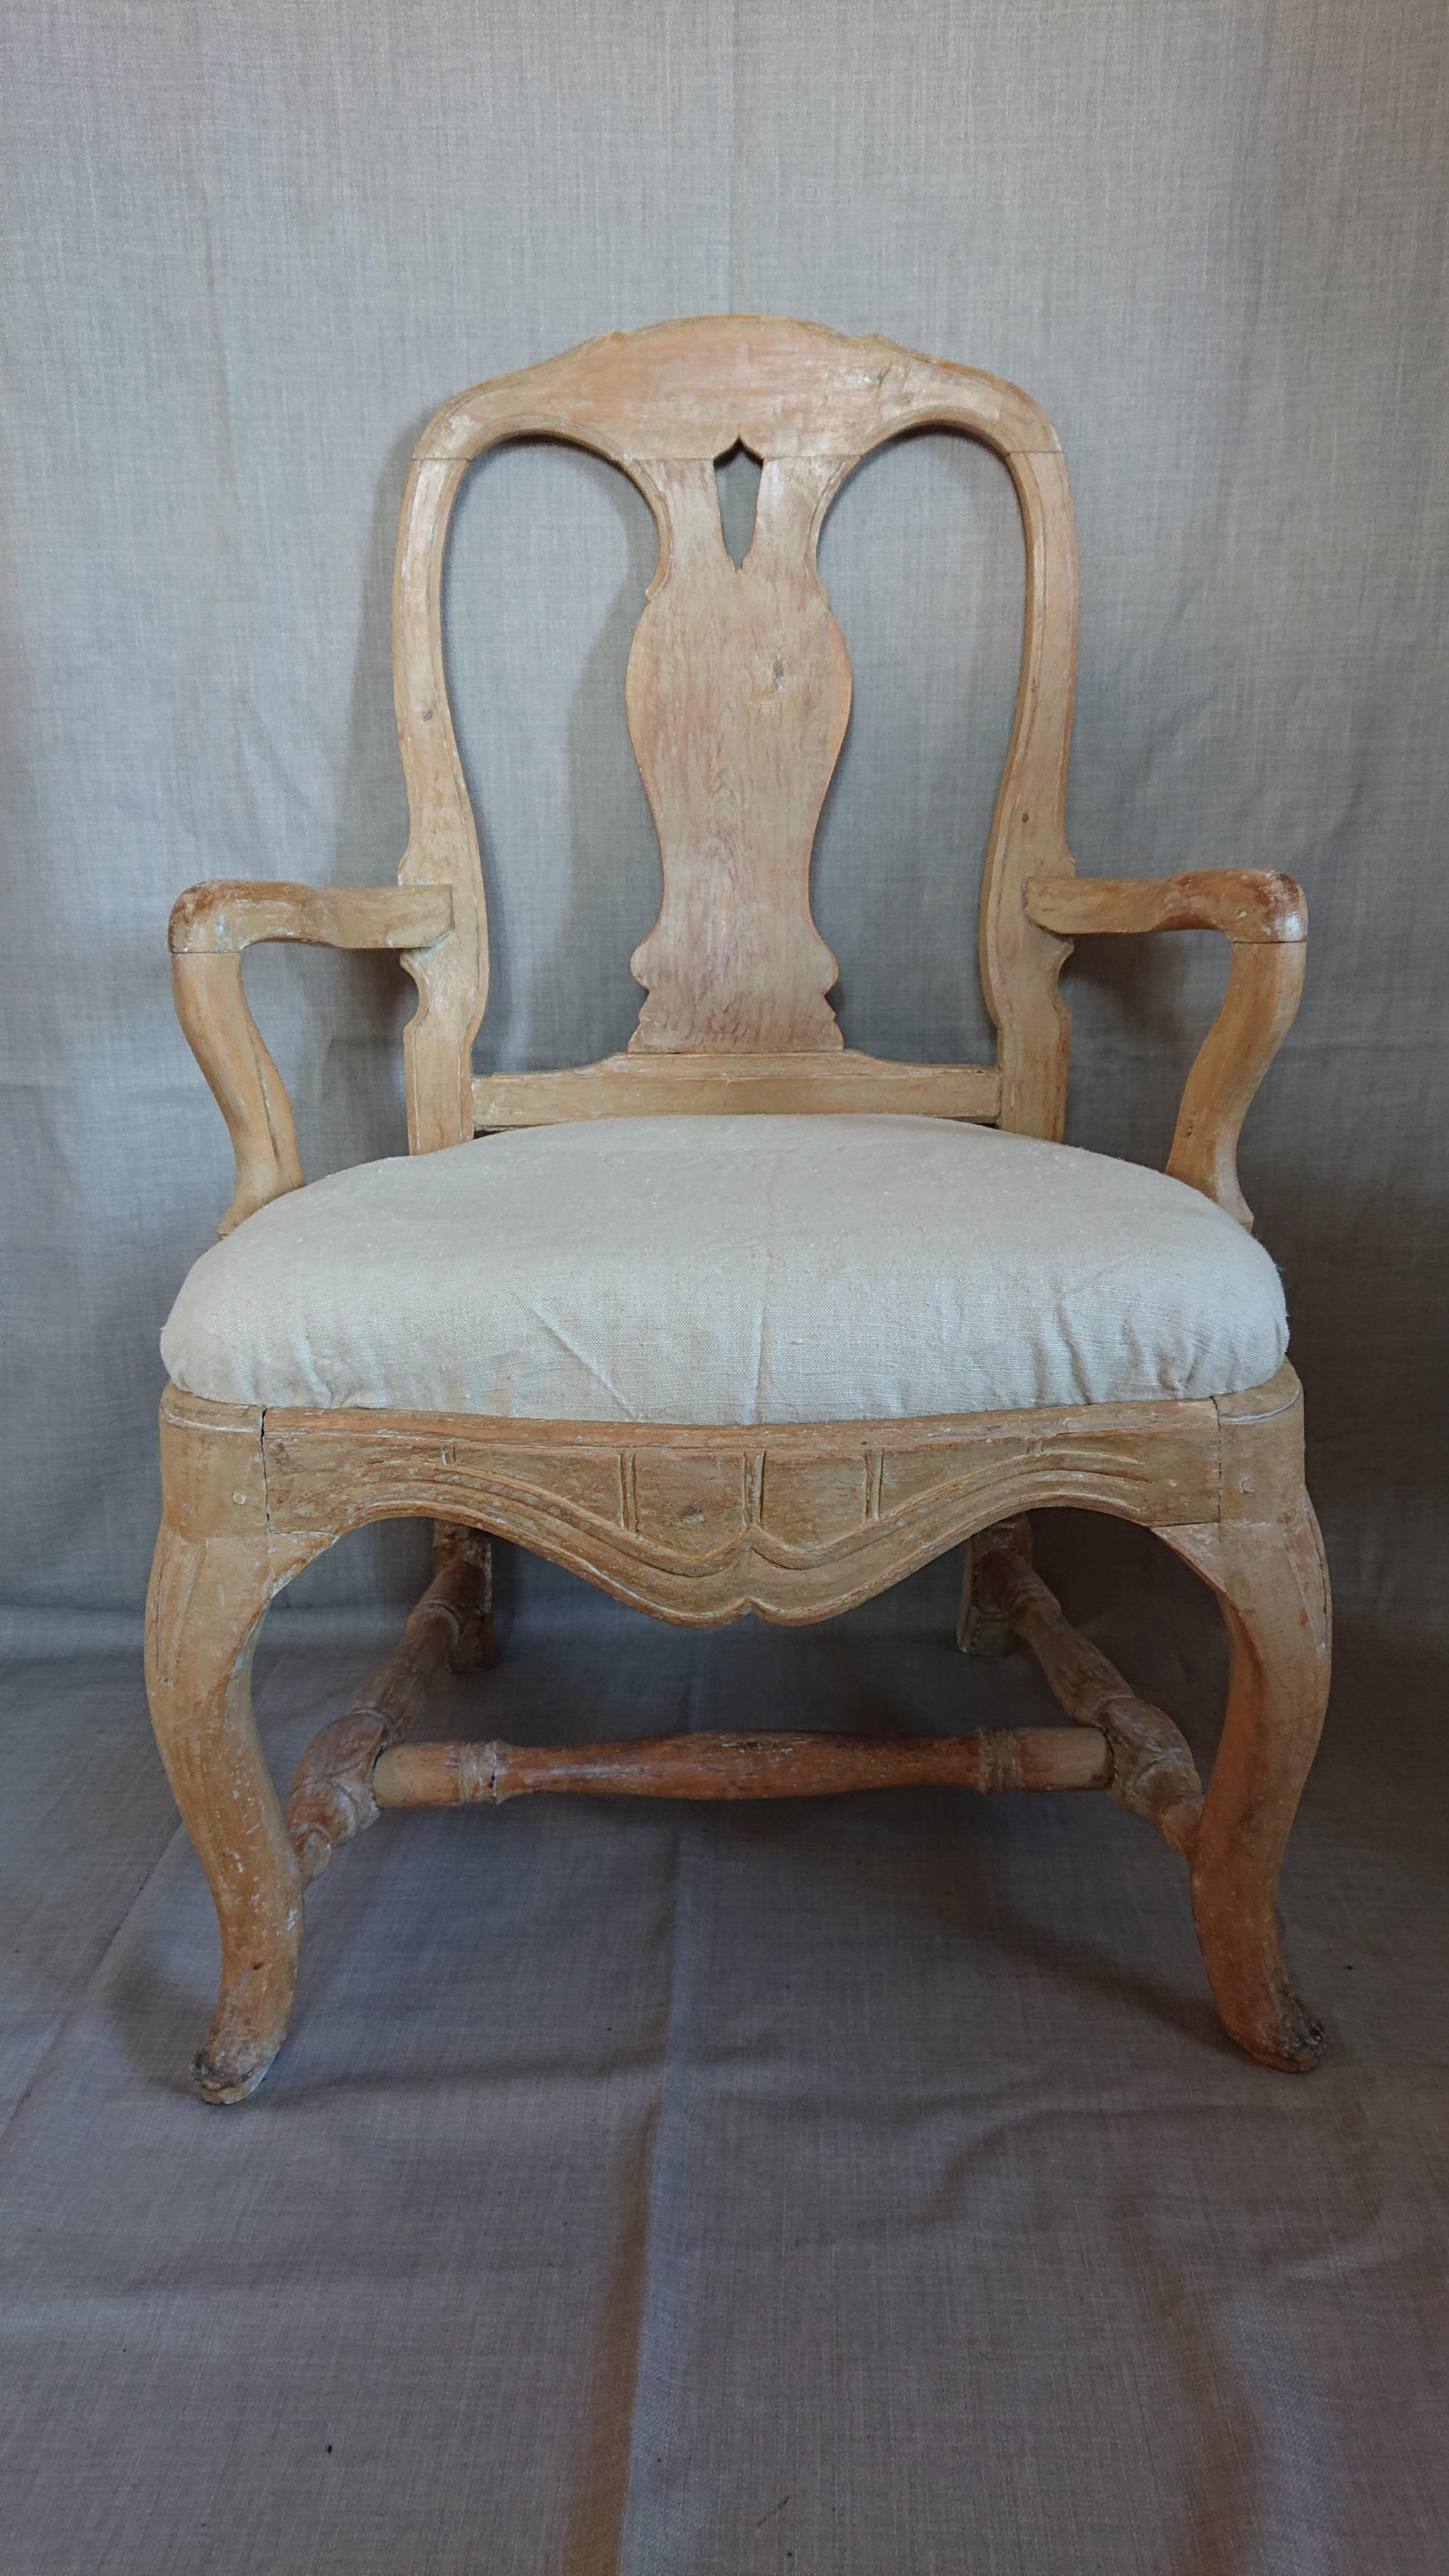 fauteuil rococo suédois du 18e siècle provenant de Sundsvall Medelpad, dans le nord de la Suède.
Un beau fauteuil avec de belles proportions et des pieds incurvés.
Grattée à la main pour retrouver sa couleur d'origine.
L'assise de la chaise est